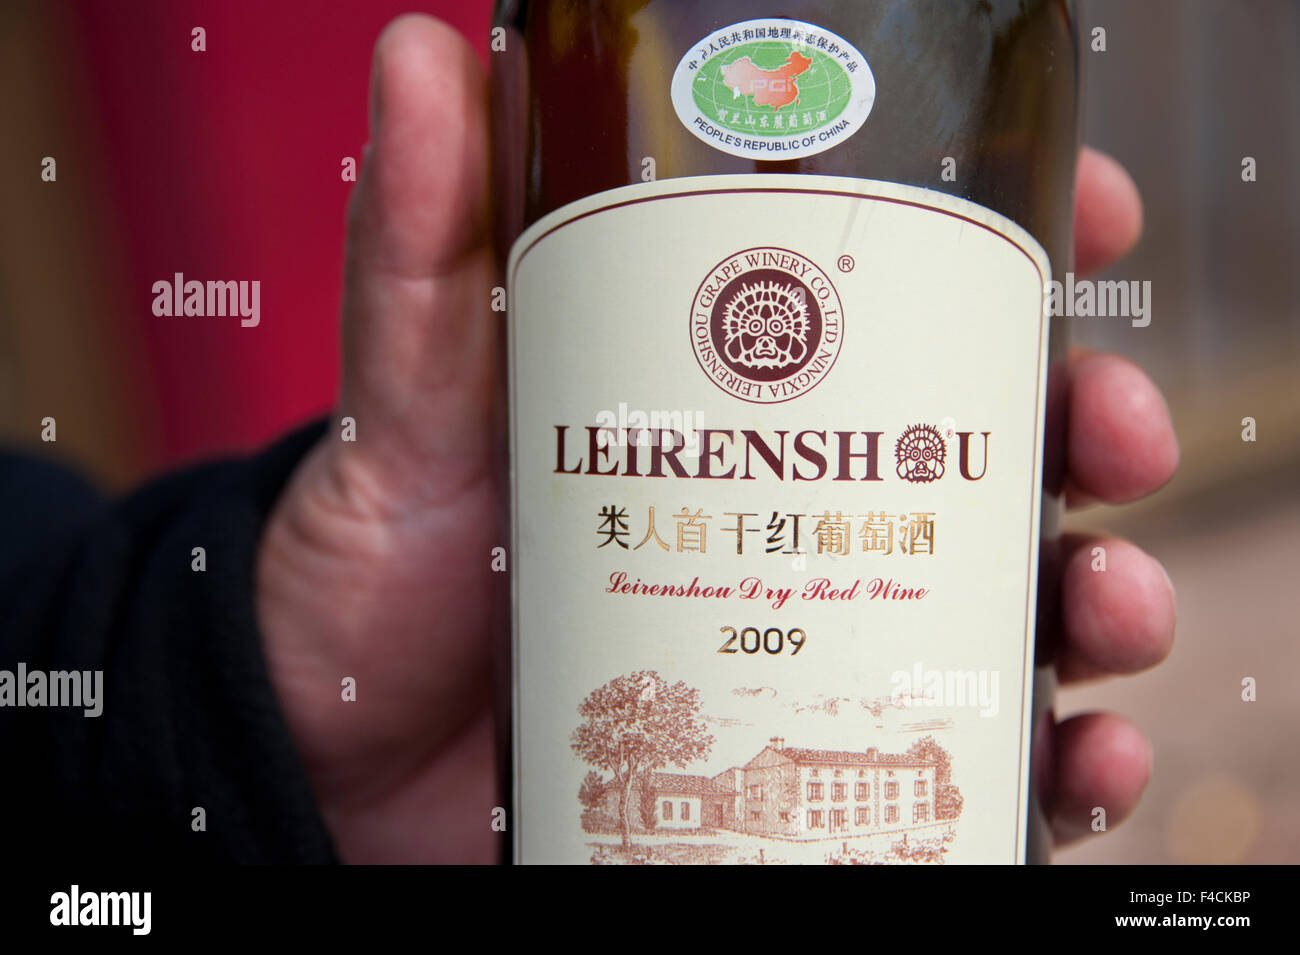 La Chine, Ningxia. Qing Feng, président de l'Leirenshou Grape Winery, est titulaire d'une bouteille de son vin. Banque D'Images